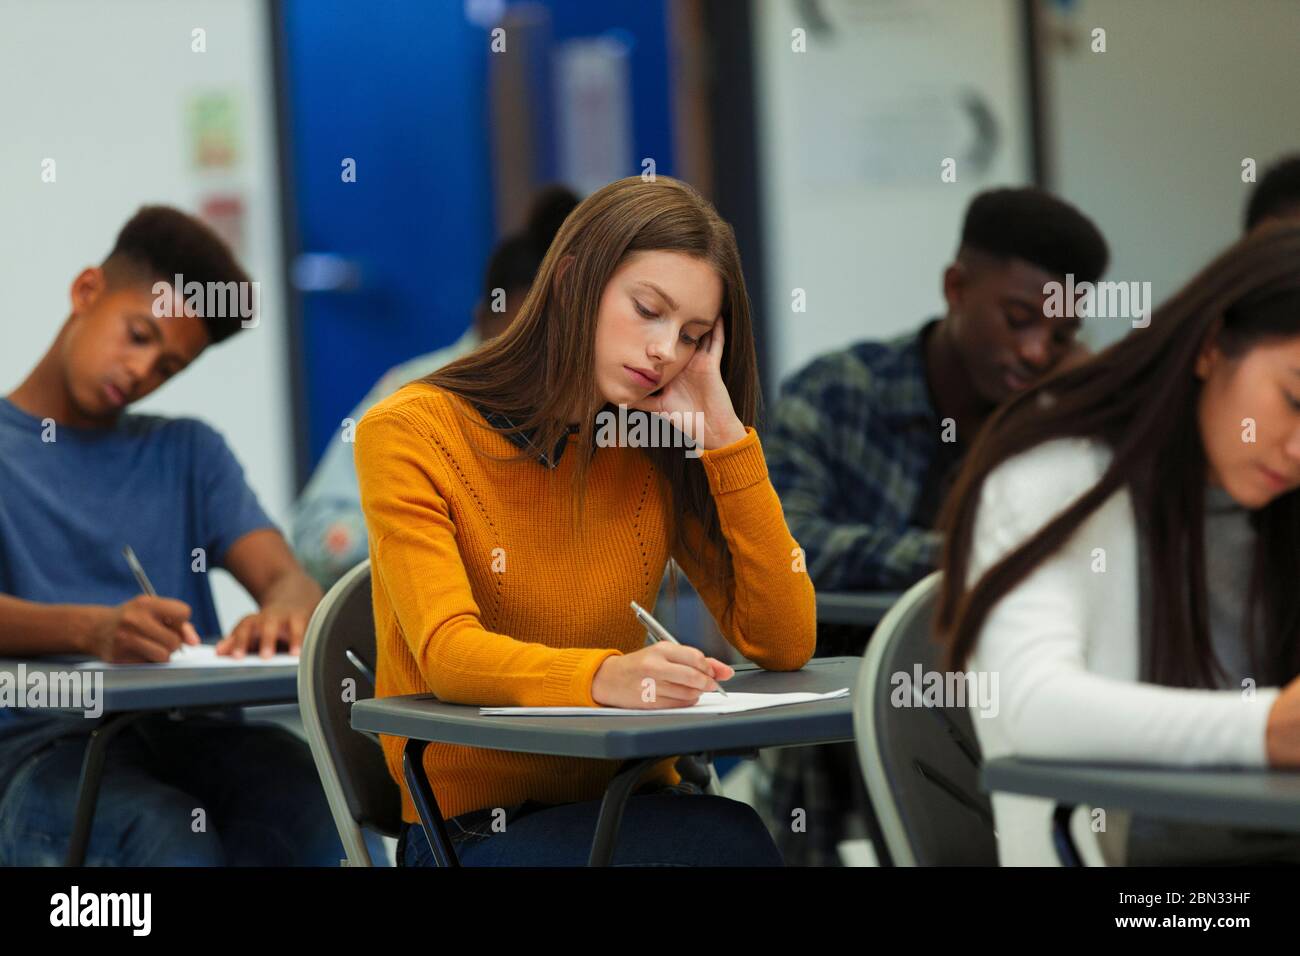 Jeune fille d'école secondaire ciblée prenant l'examen à bureau en classe Banque D'Images